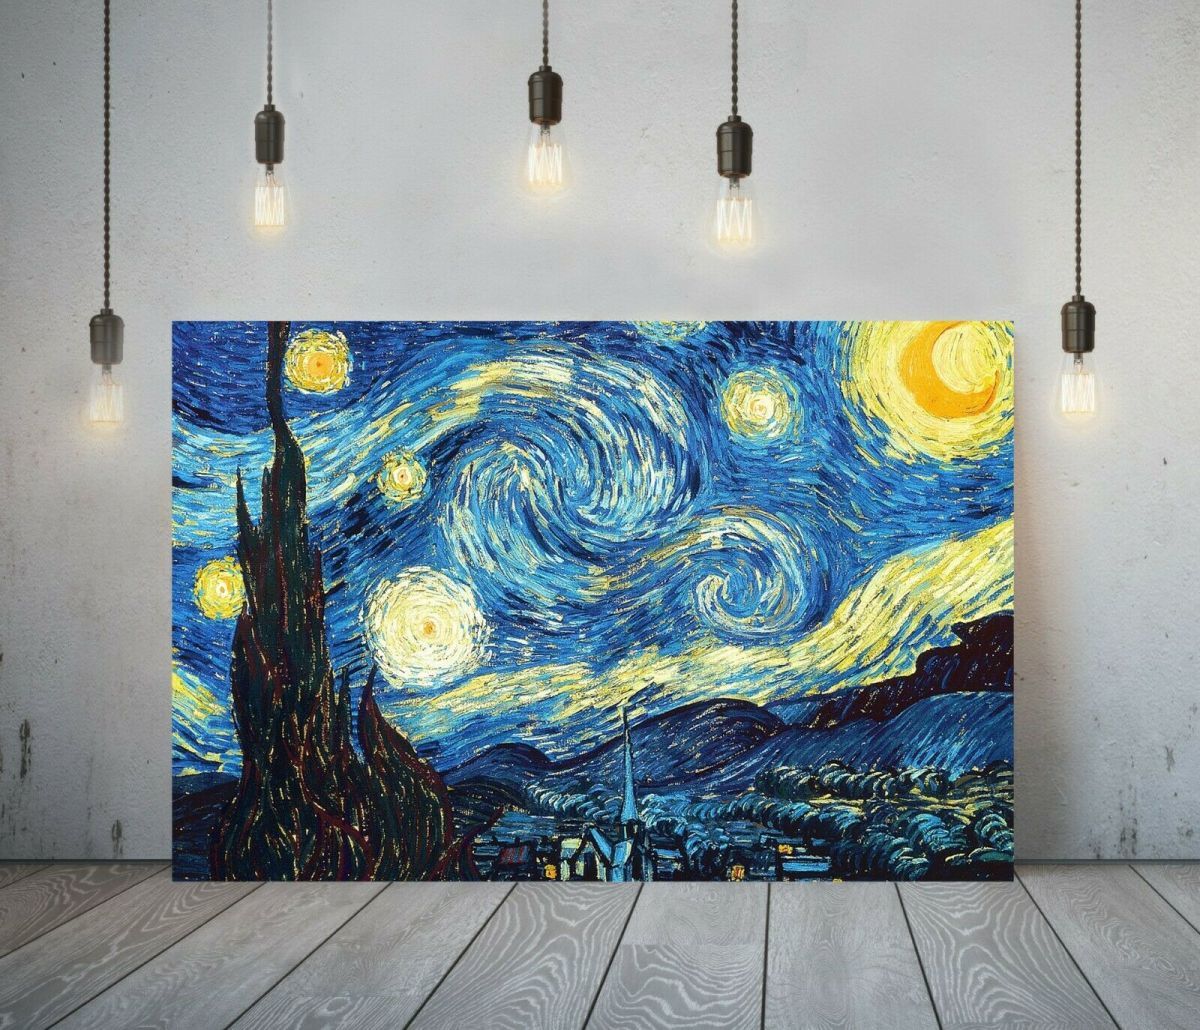 Póster de noche estrellada de Van Gogh, lienzo de alta calidad, cuadro enmarcado A1, Panel artístico, productos de pintura extranjera nórdica para Interior 2, Materiales impresos, Póster, otros